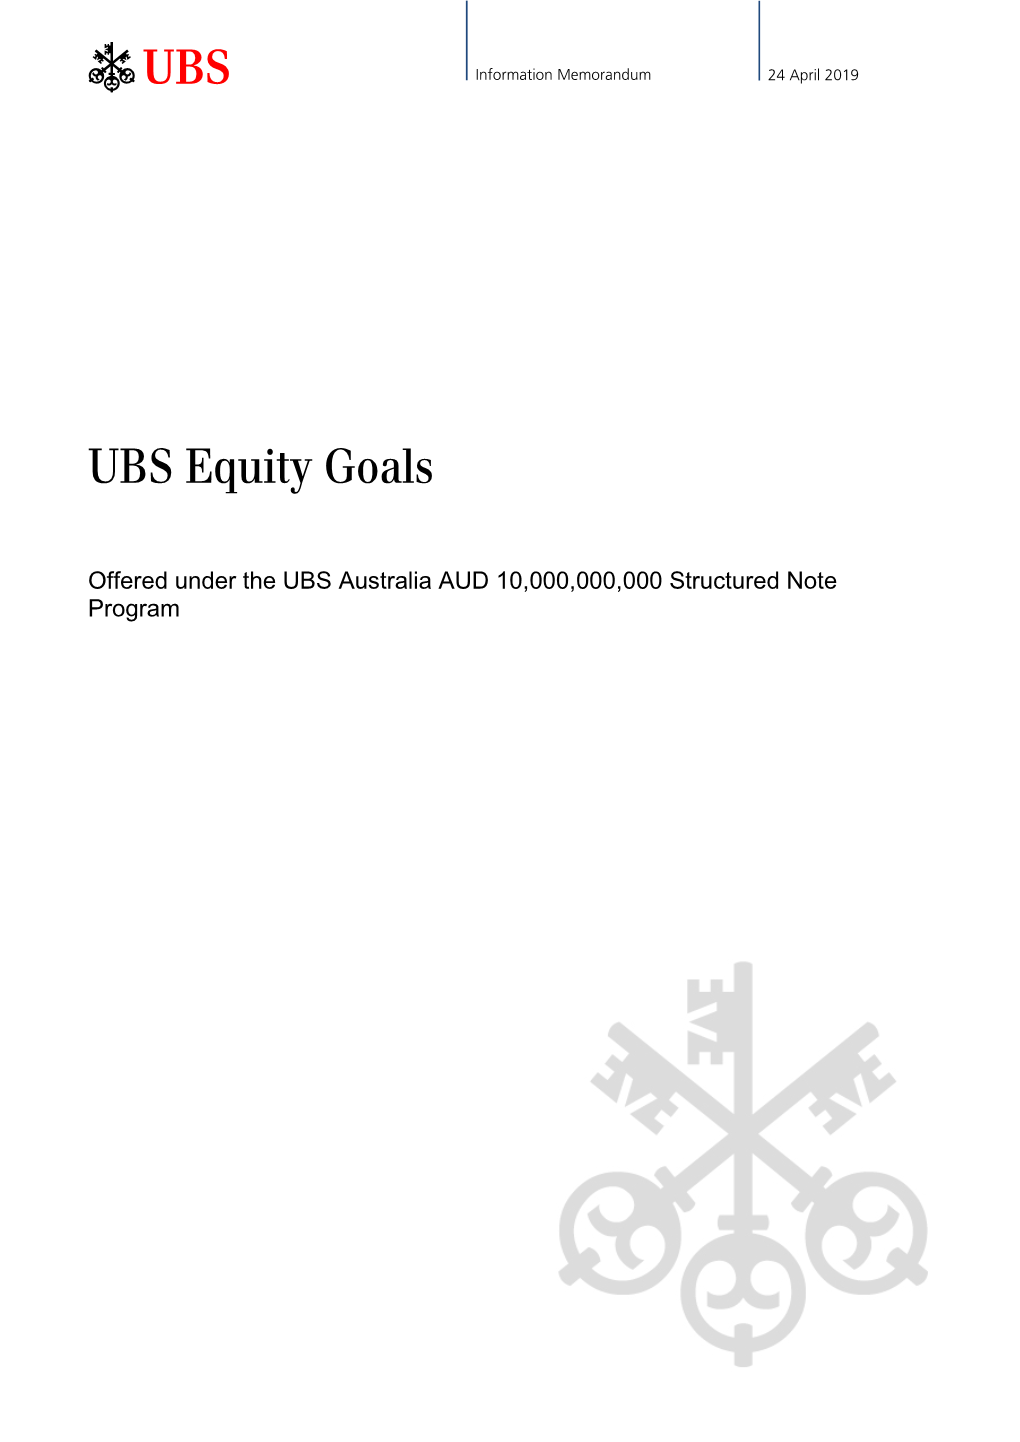 UBS Equity Goals Information Memorandum Dated